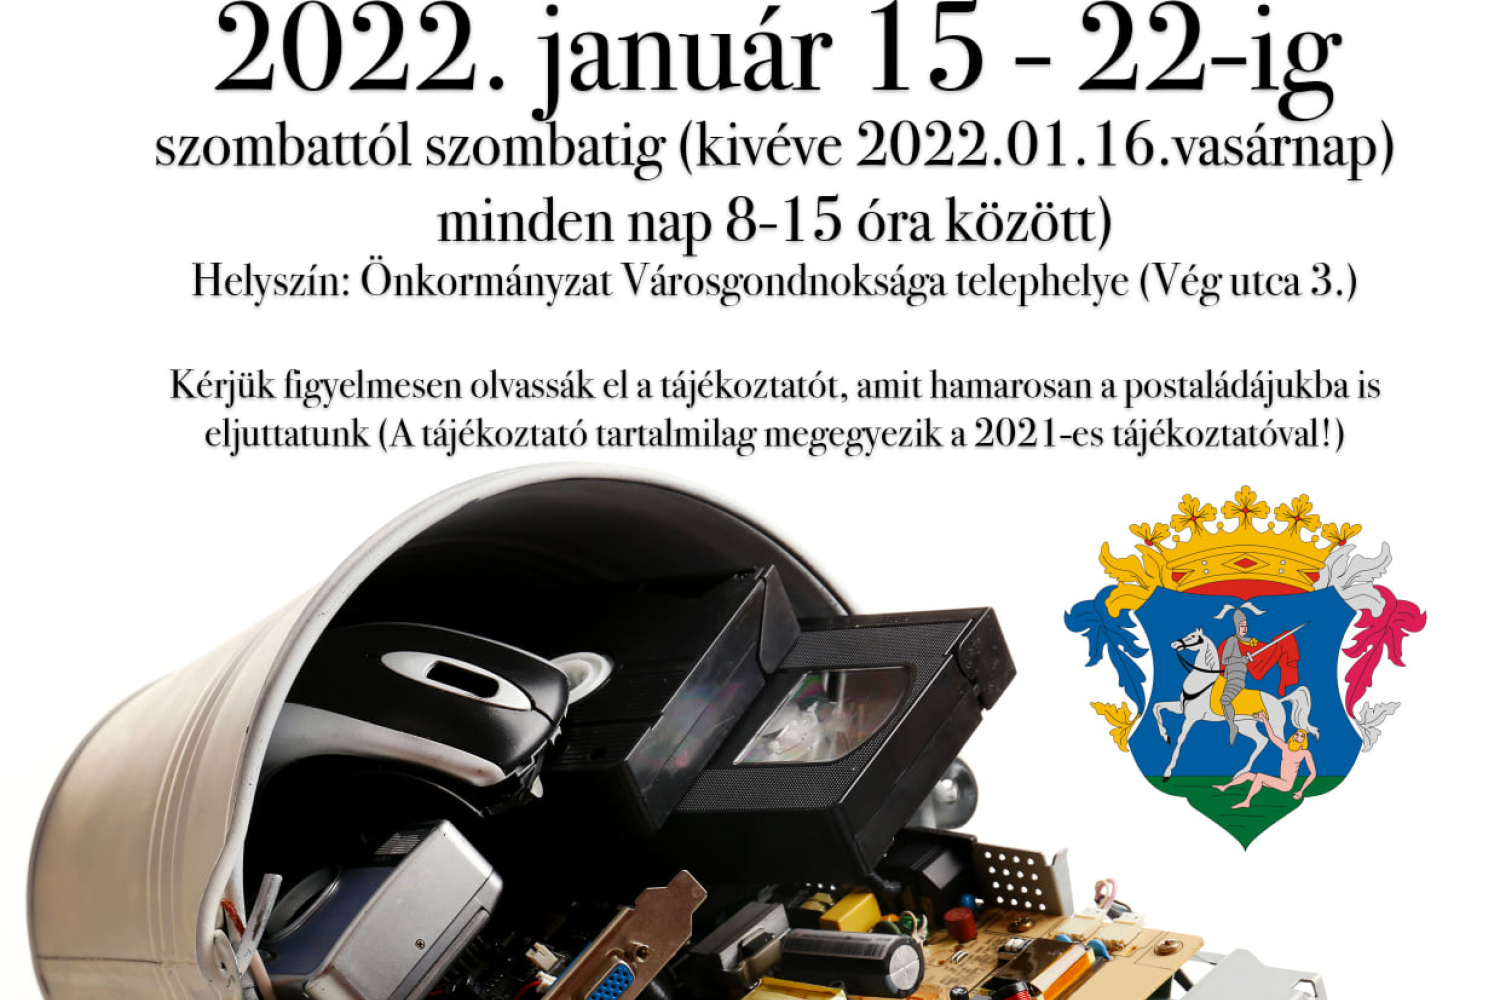 Elektromos és Elektronikai Hulladékok Gyűjtése 2022. január 15-22